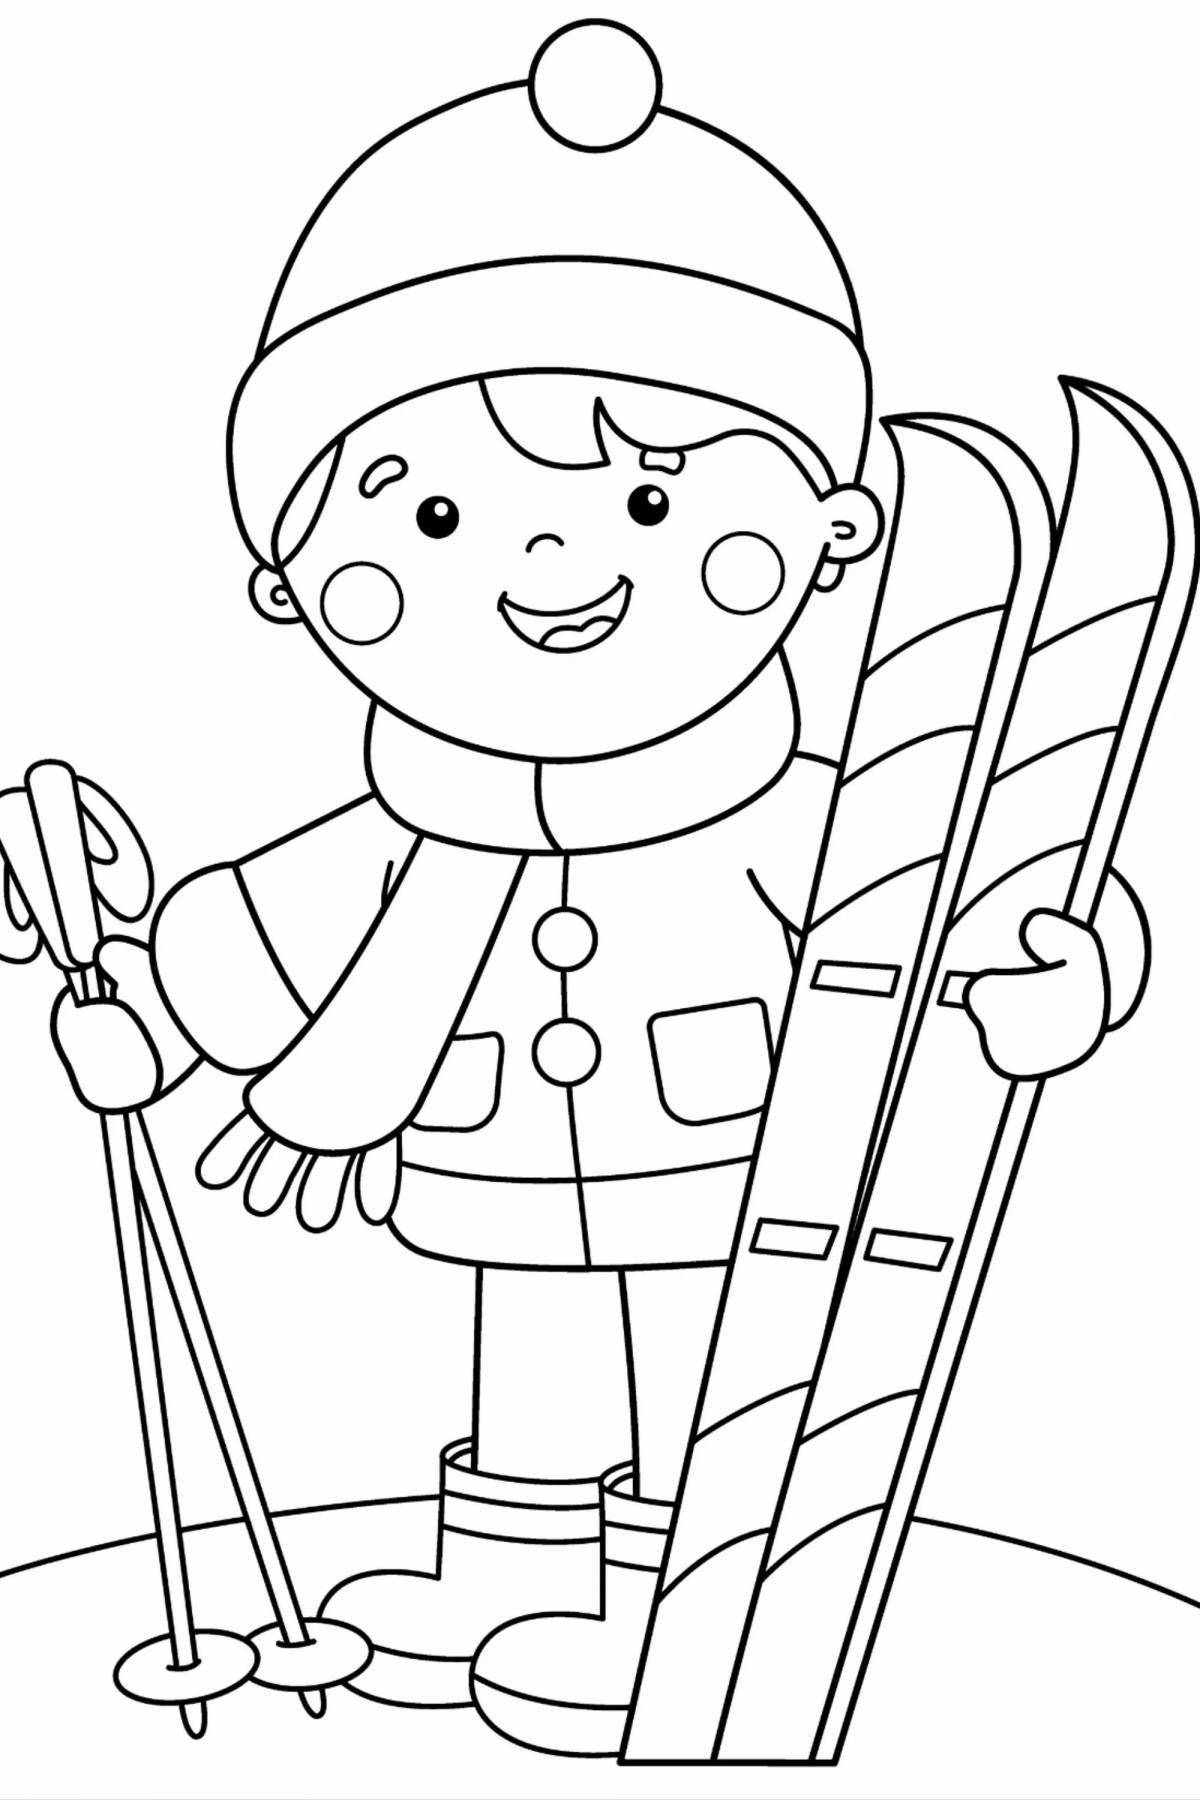 Раскраска авантюрный лыжник для детей 5-6 лет